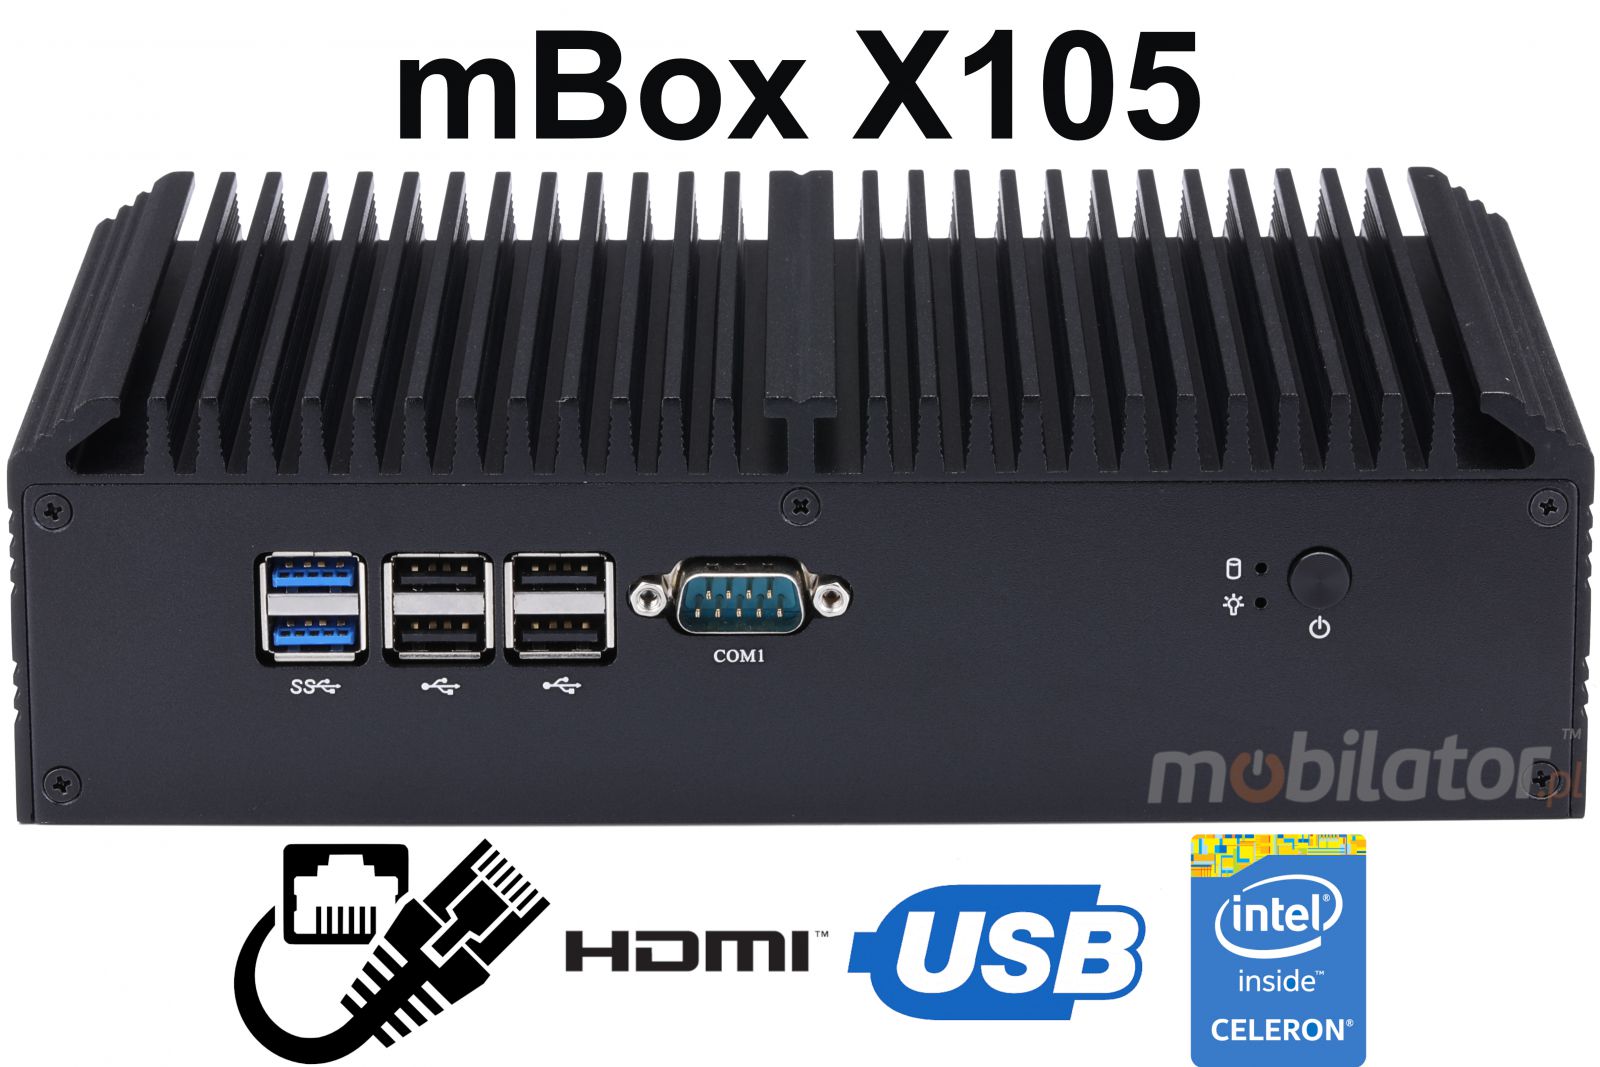 mBox X105 v.1 - Przemysowy MiniPC - procesor Intel Celeron 3855U - dysk M.2 - USB 3.0, 2x HDMI - Obrazek tytuowy